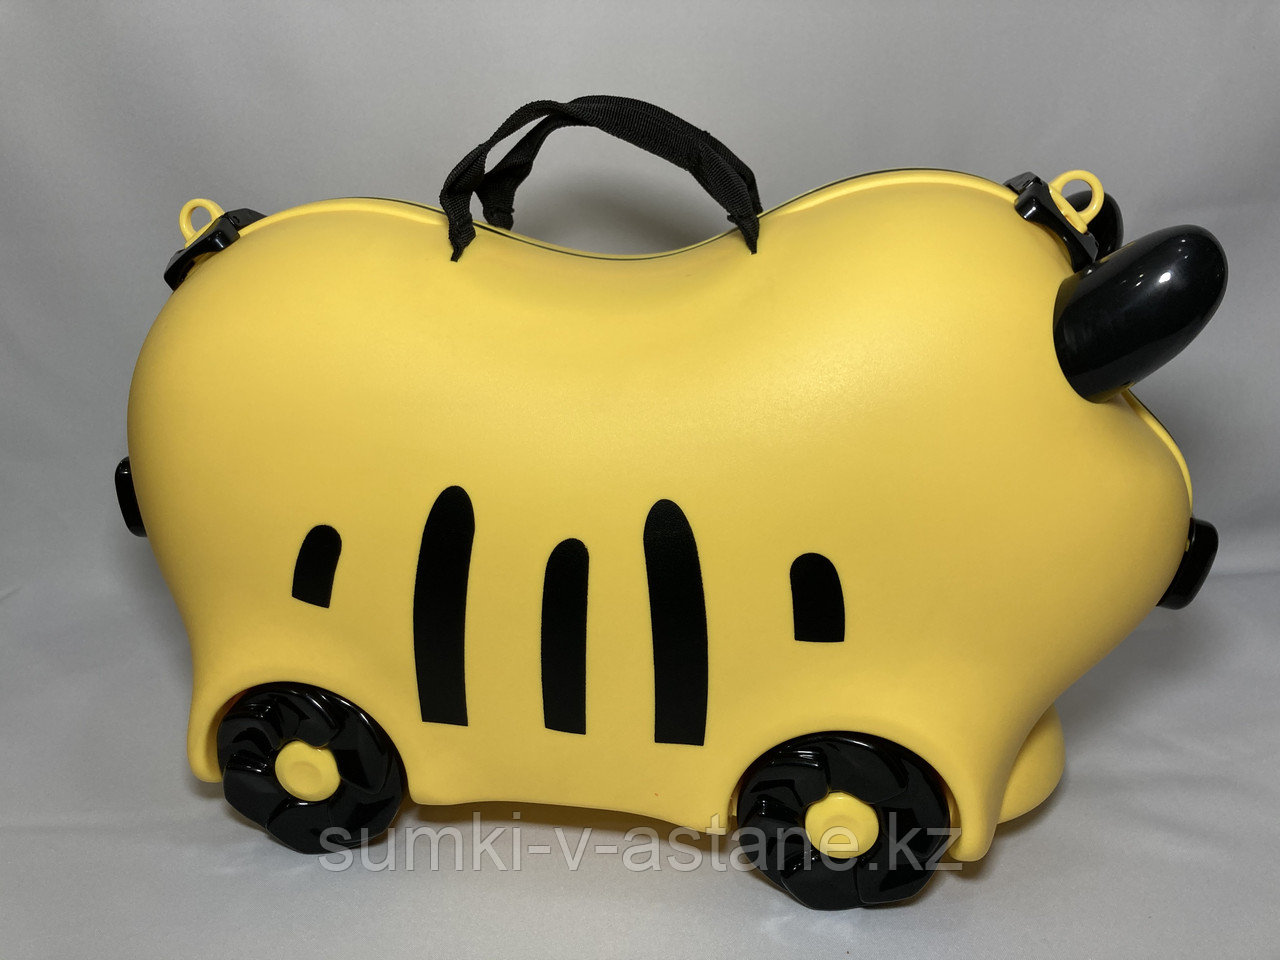 Детский пластиковый чемодан "Trunki" для детей с 3-х до 6-и лет (высота 32 см, ширина 52 см, глубина 21 см)